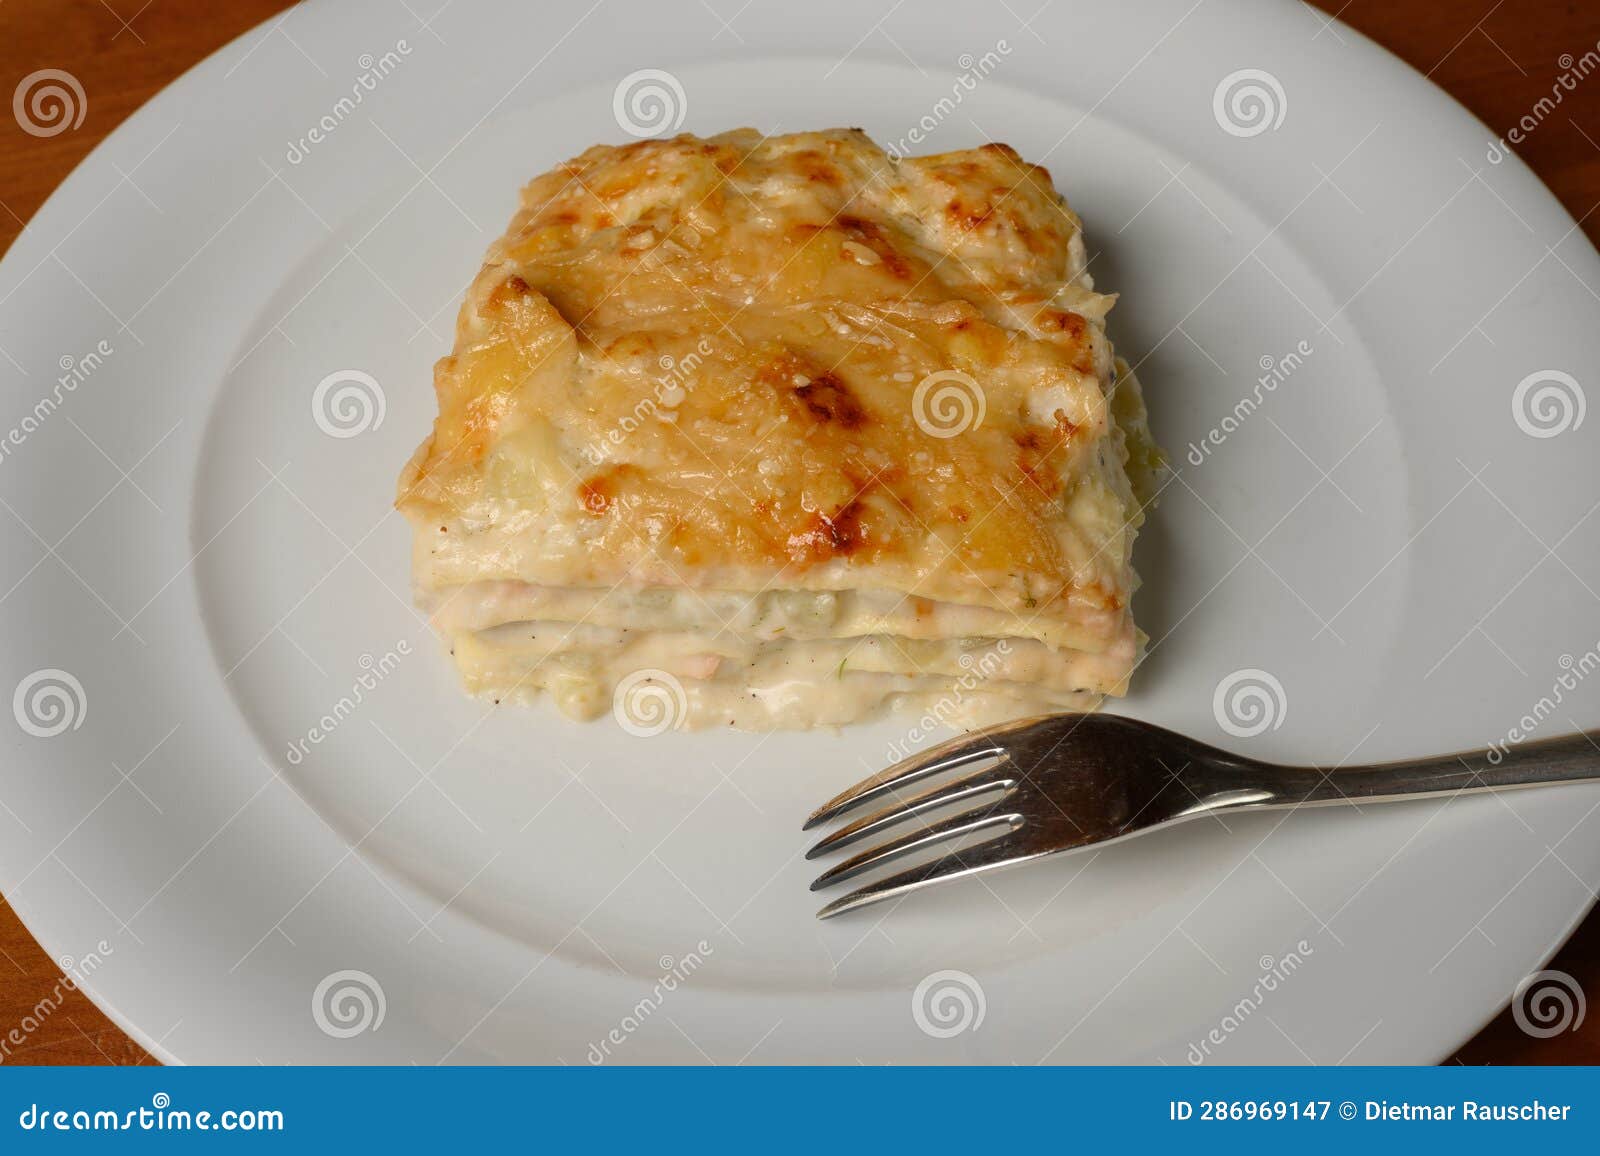 white fish lasagna or lasagne di pesce